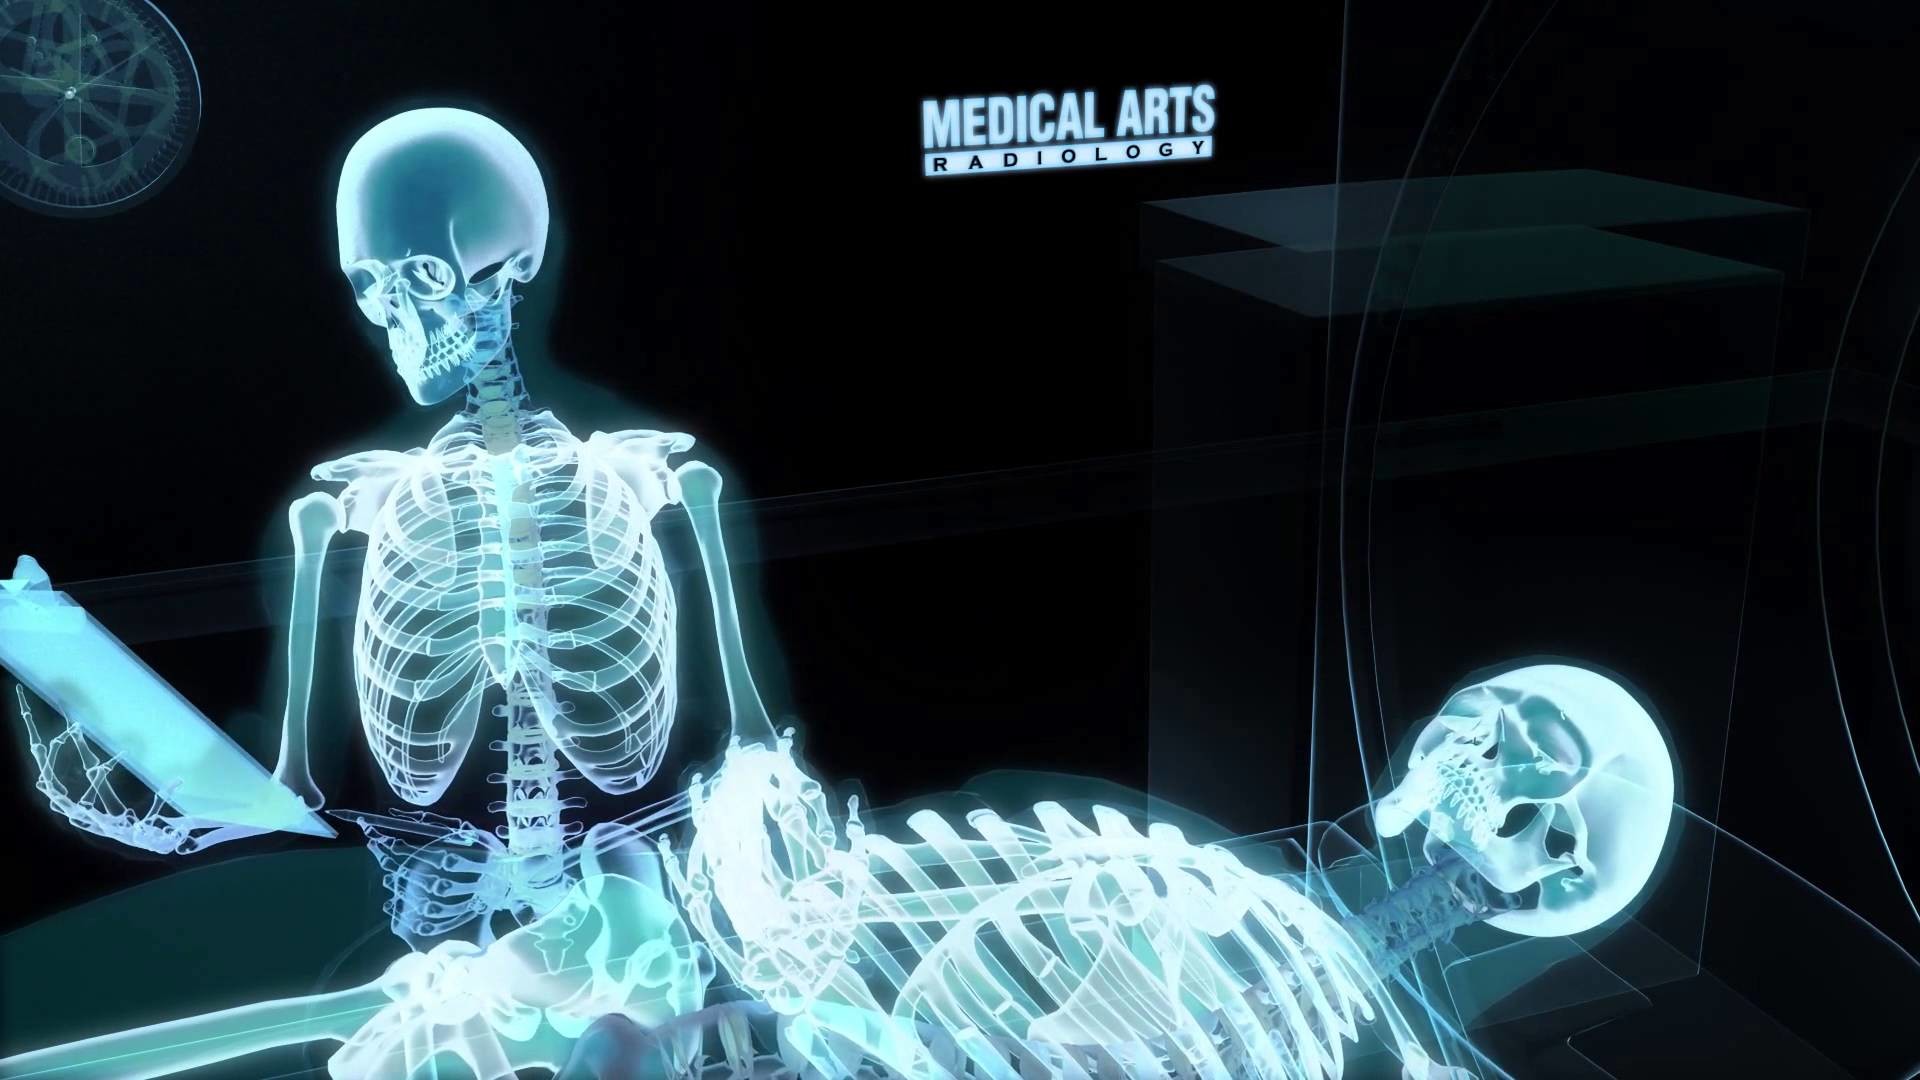 röntgenbild,radiographie,medizinisch,medizinische bildgebung,mensch,menschlicher körper